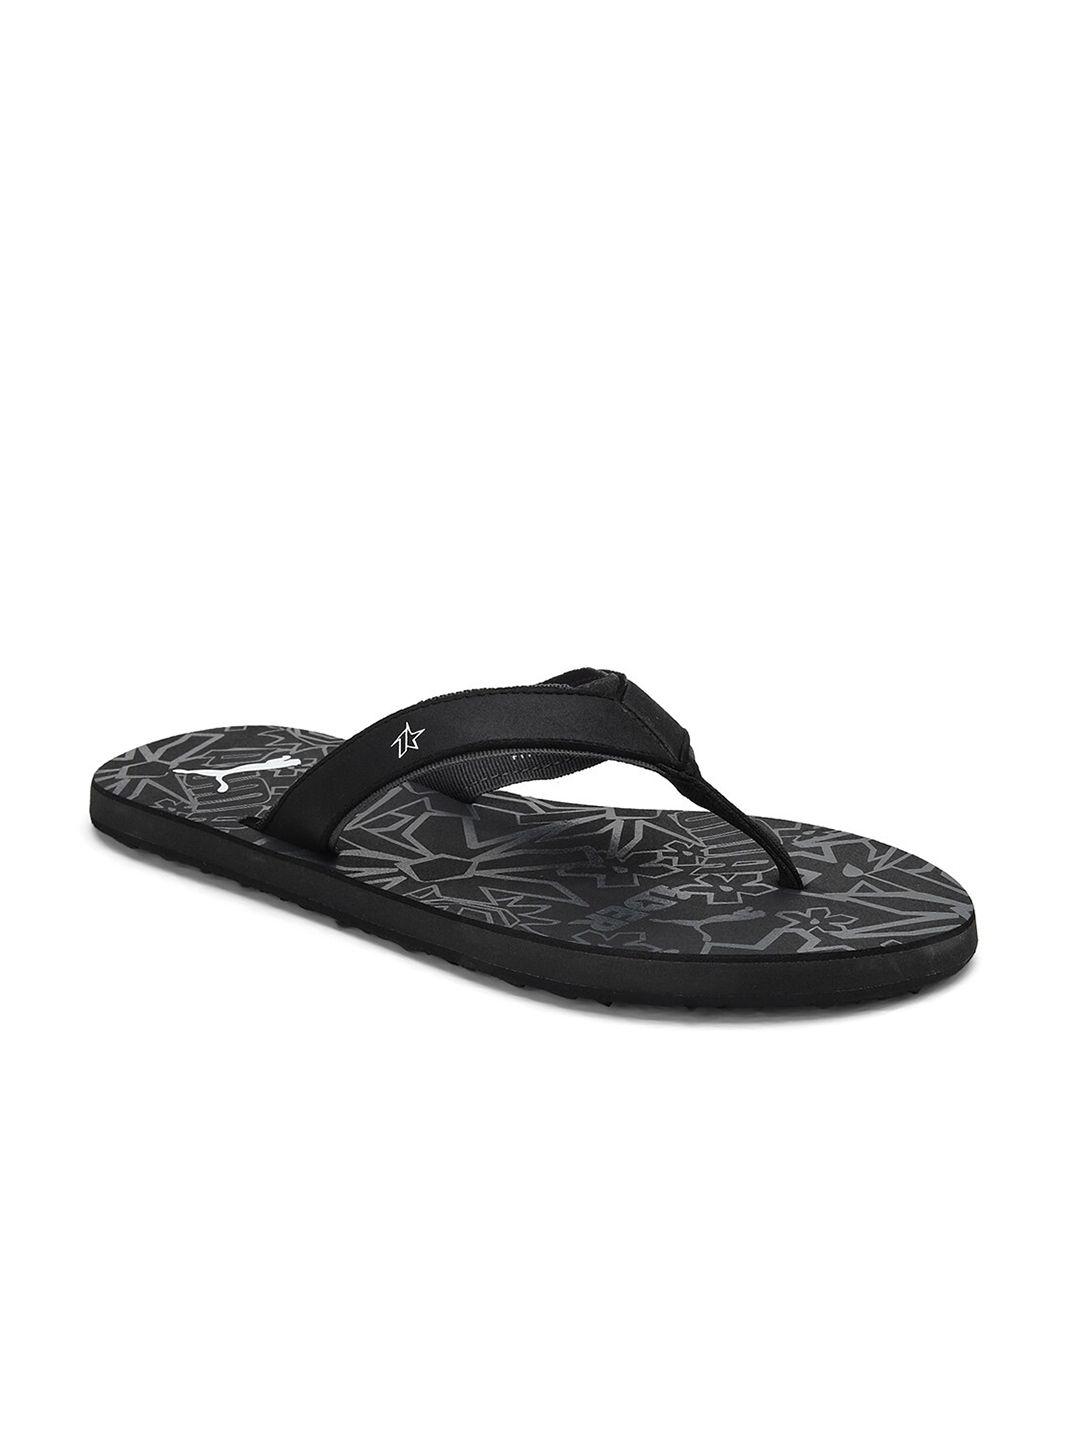 puma-men-black-&-white-printed-puma-x-1der-okla-v3-thong-flip-flops